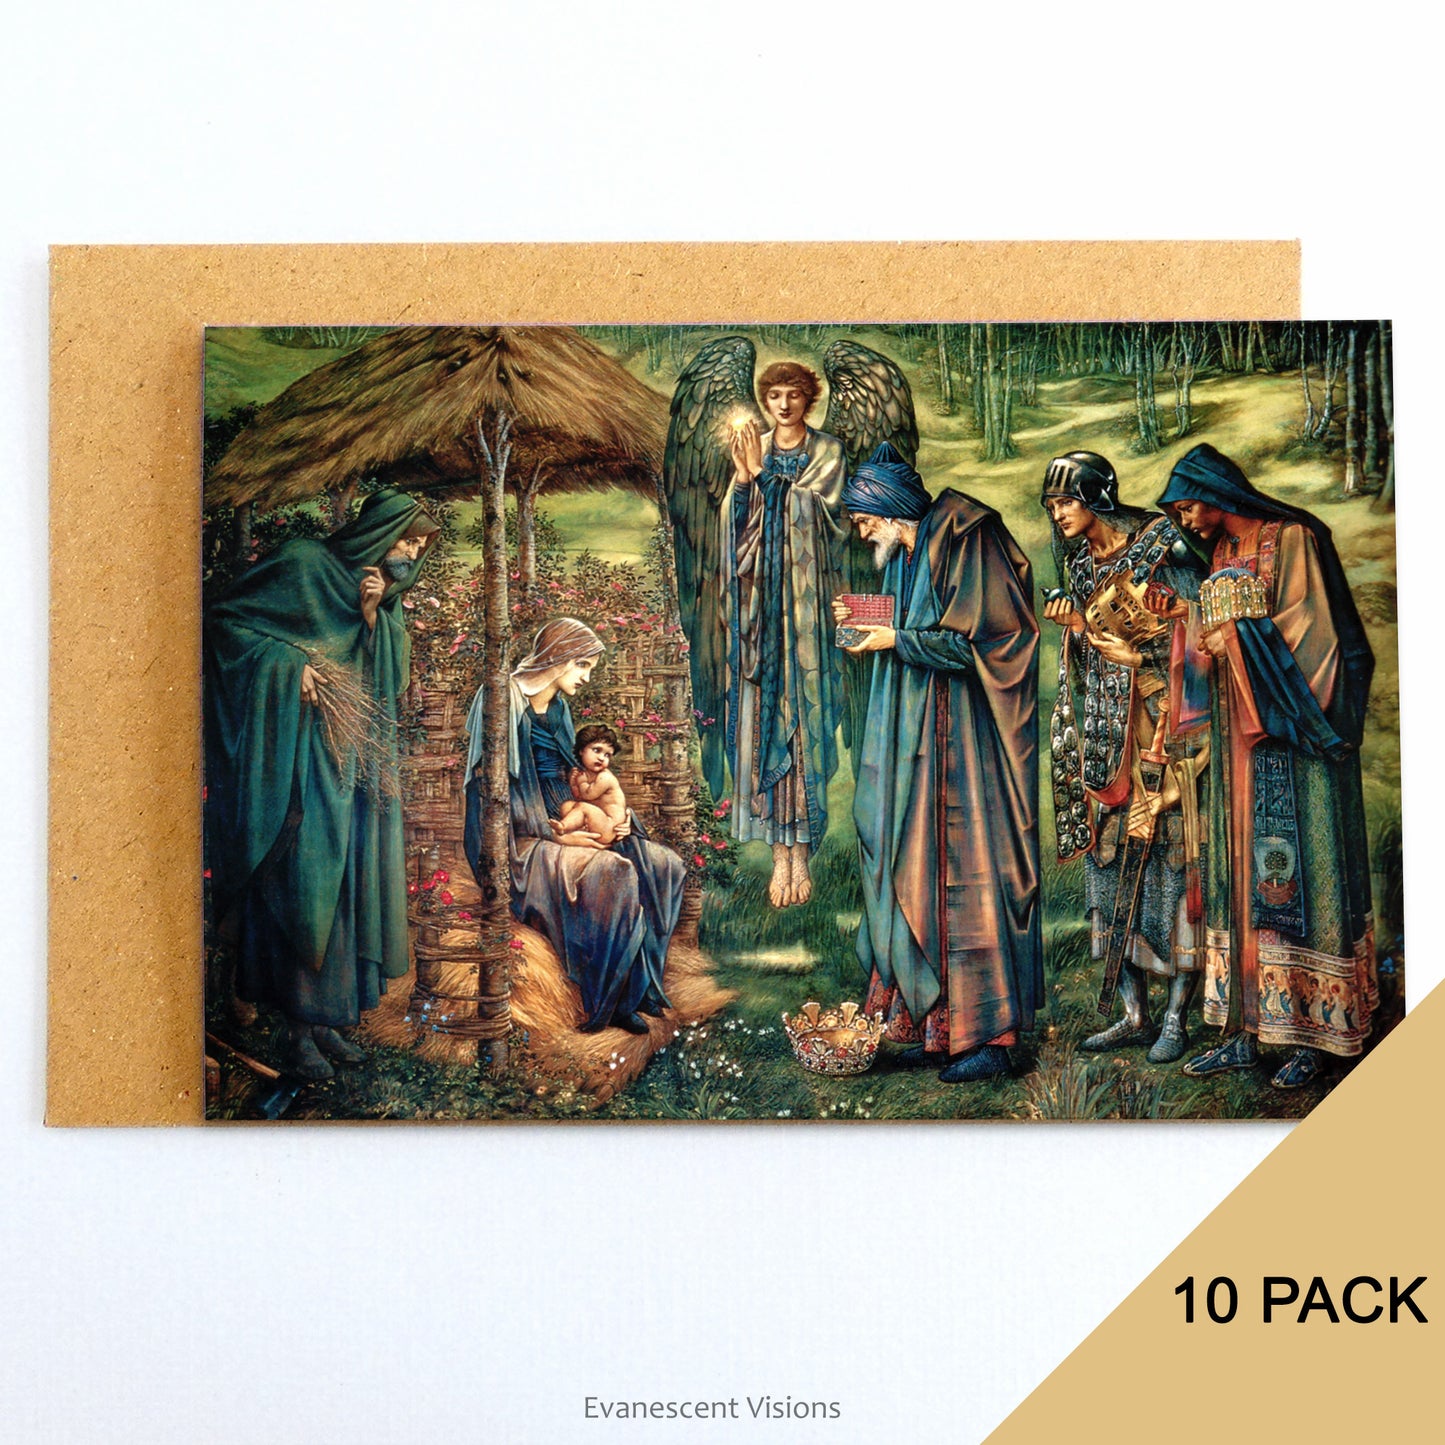 Burne-Jones Star of Bethlehem Nativity Christmas Cards, Pack of 10